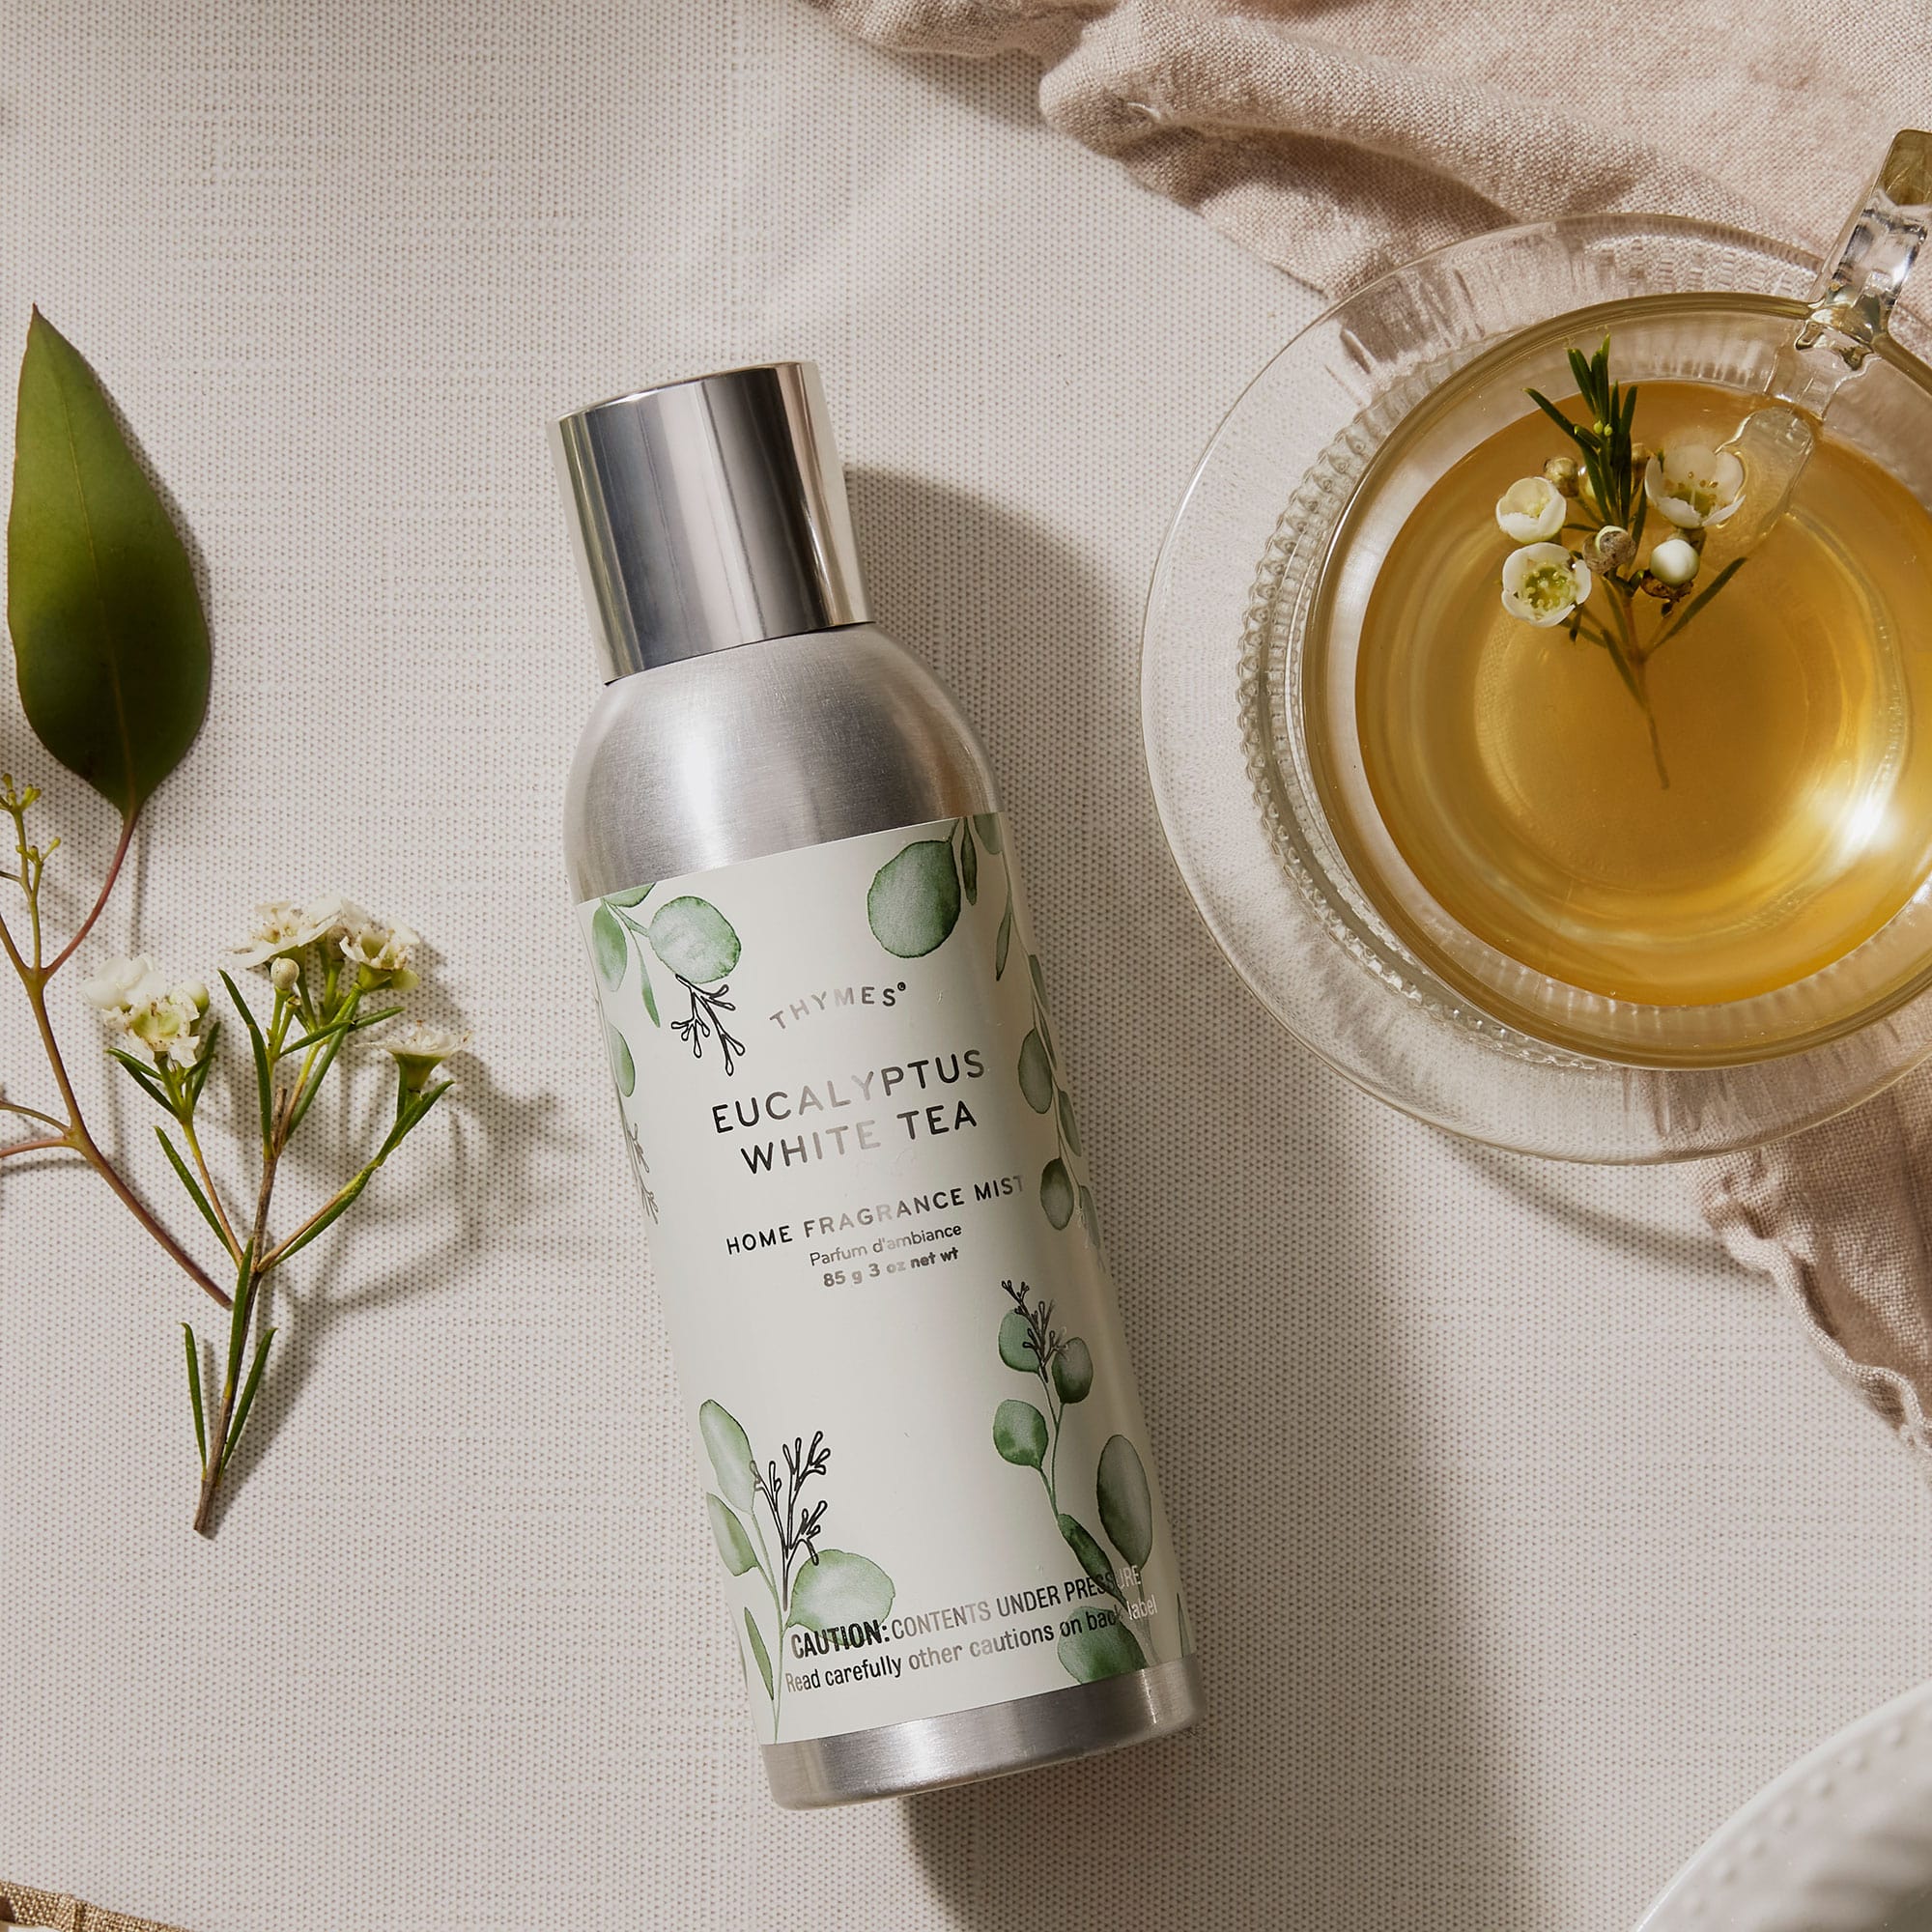 Eucalyptus White Tea Home Fragrance Mist | Bath Products